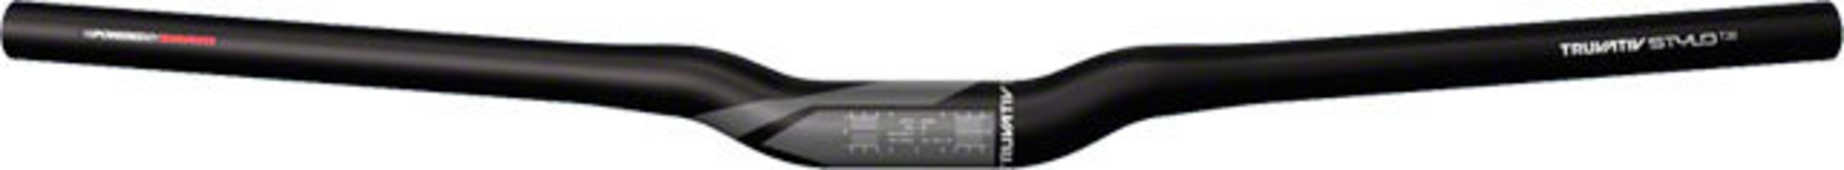 Styre Truvativ Stylo T20 Riser 30 31.8 mm 680 mm svart